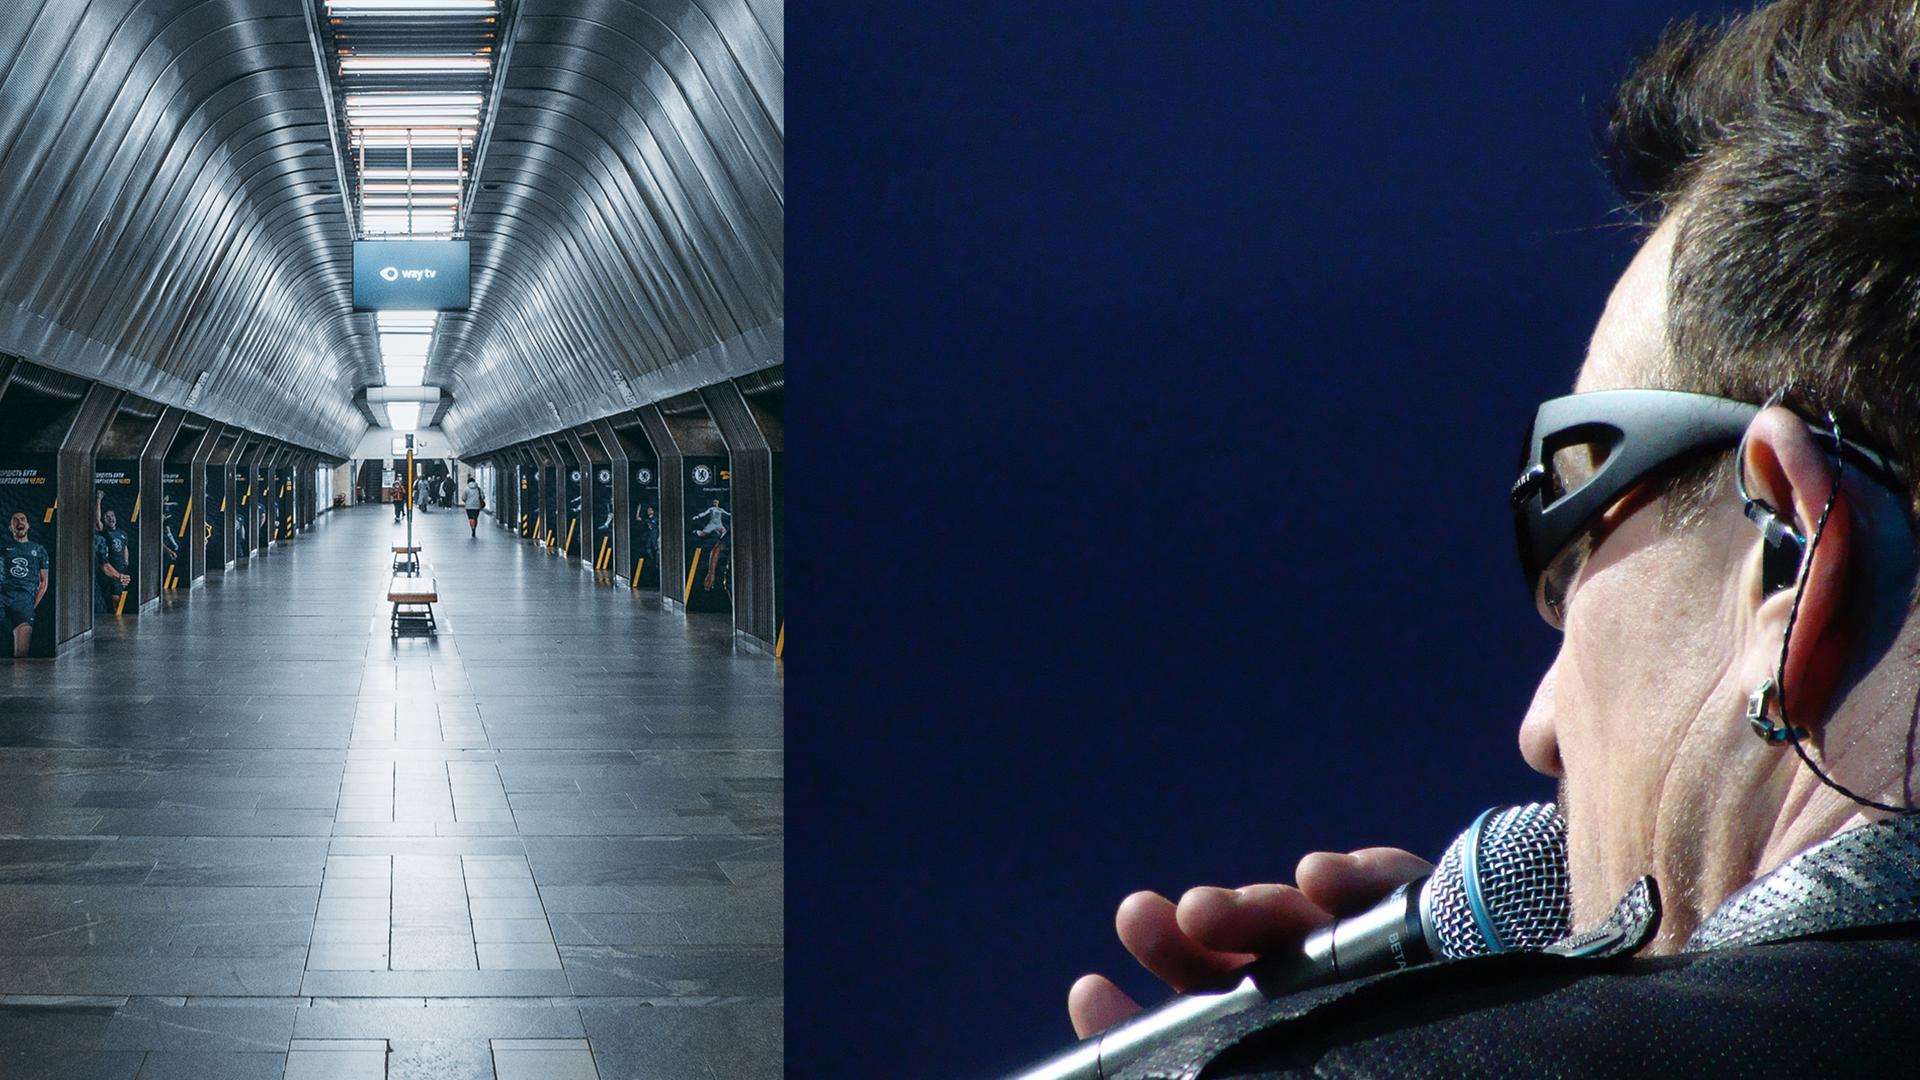 Links ein Foto einer U-Bahn-Station in Kiew, rechts ein Foto des U2-Frontmanns Bono.